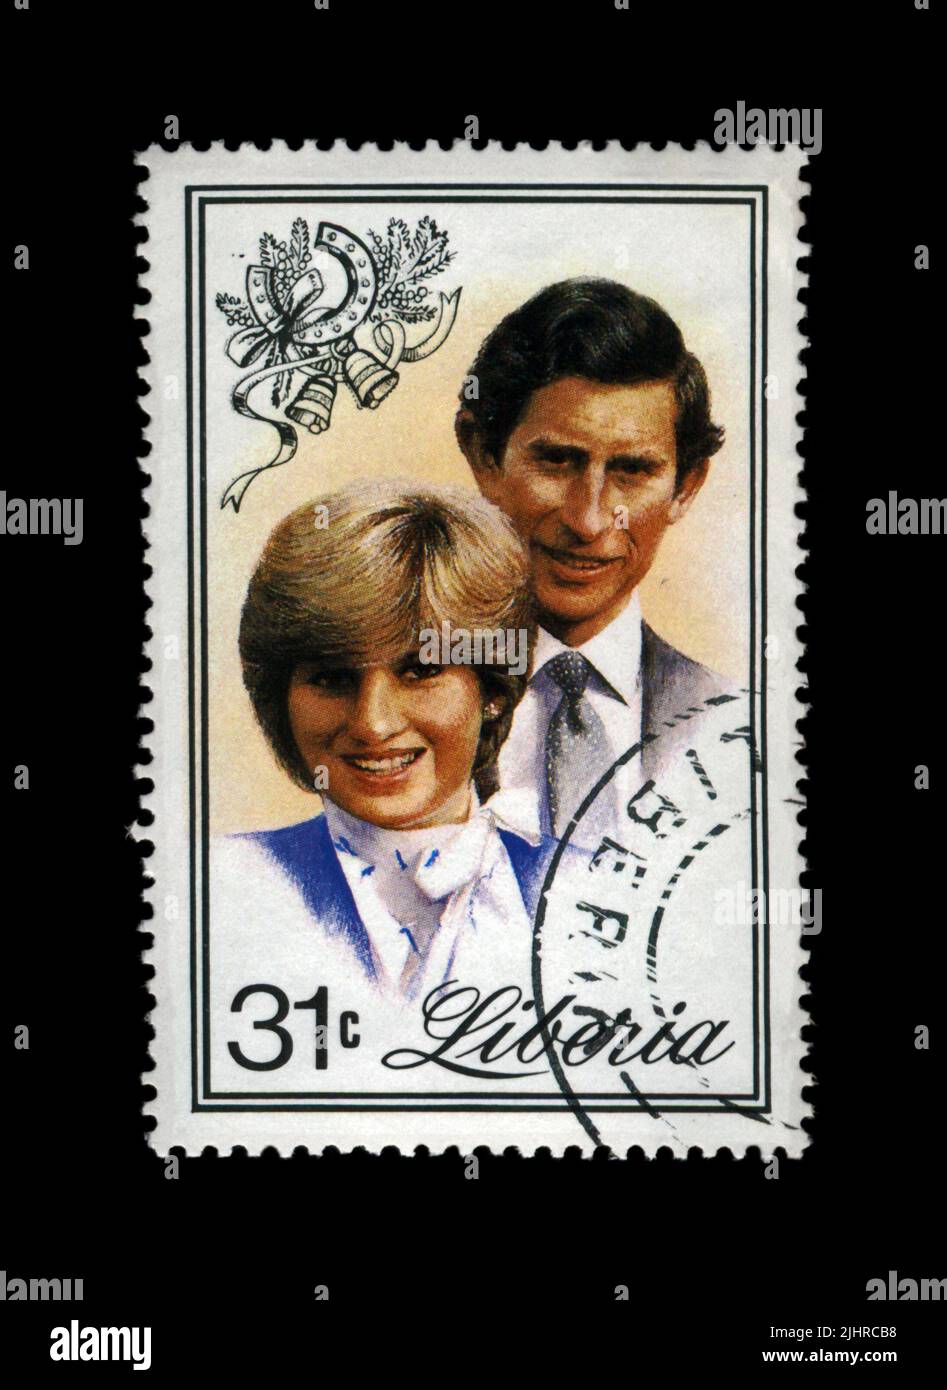 21st compleanno della principessa Diana. Cancellato timbro DELLA LIBERIA dedicato alla memoria di Lady di, Principessa di Galles. vintage post timbro isolato Foto Stock